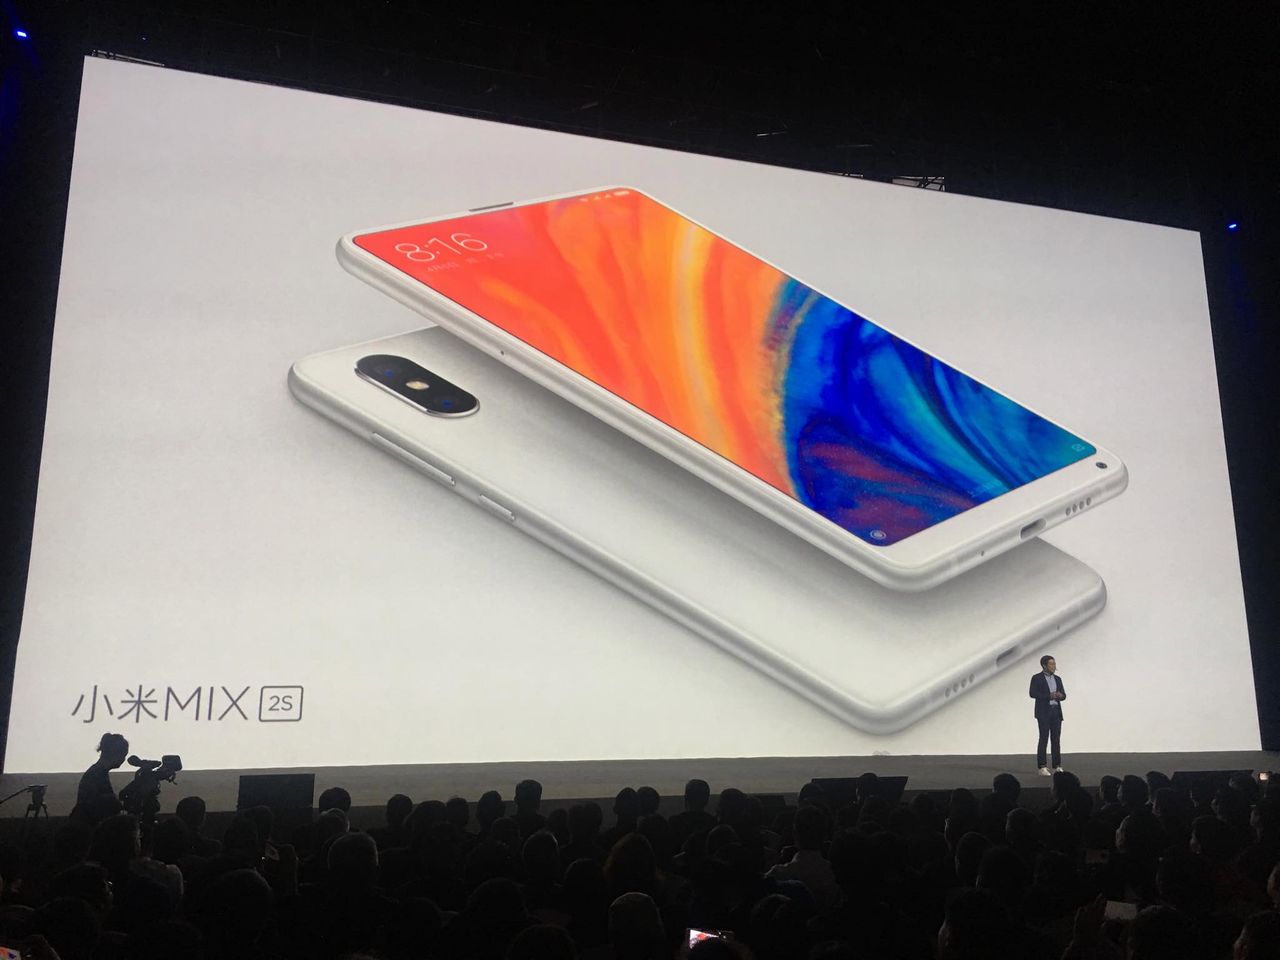 To jeden z najbardziej oczekiwanych flagowców roku. Na rynku zadebiutował Xiaomi Mi Mix 2s